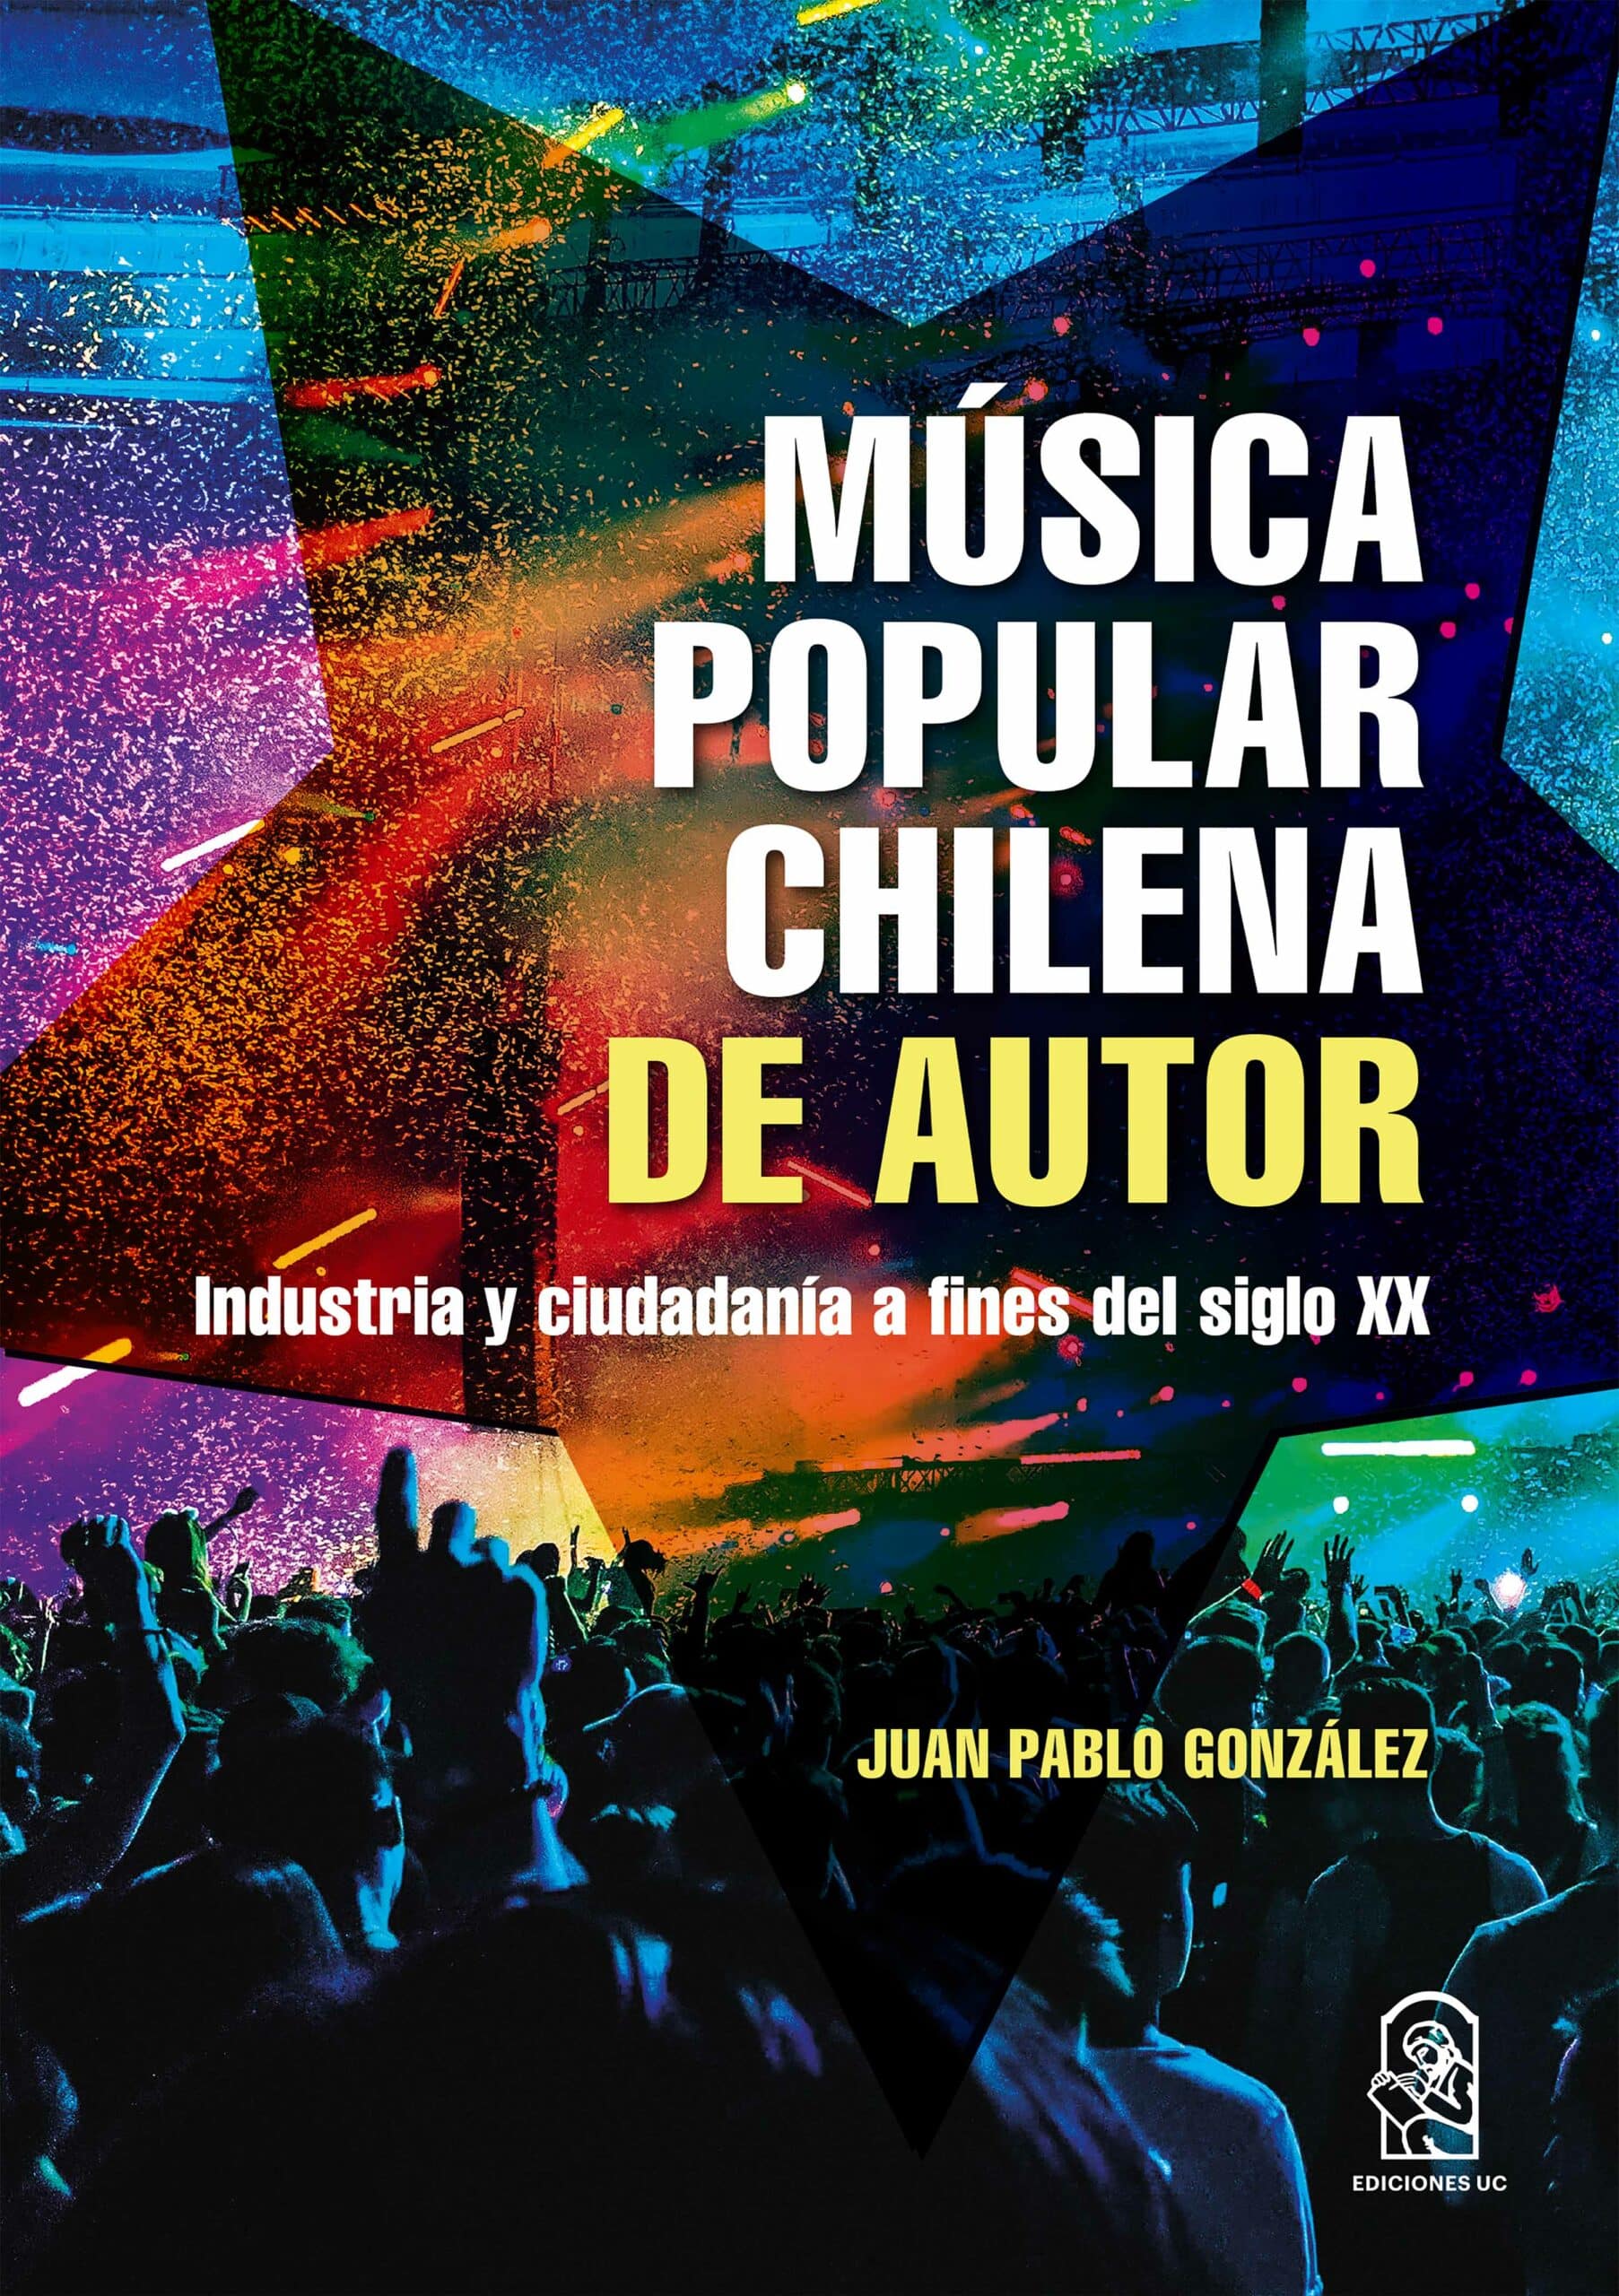 Cover image for Música popular chilena de autor